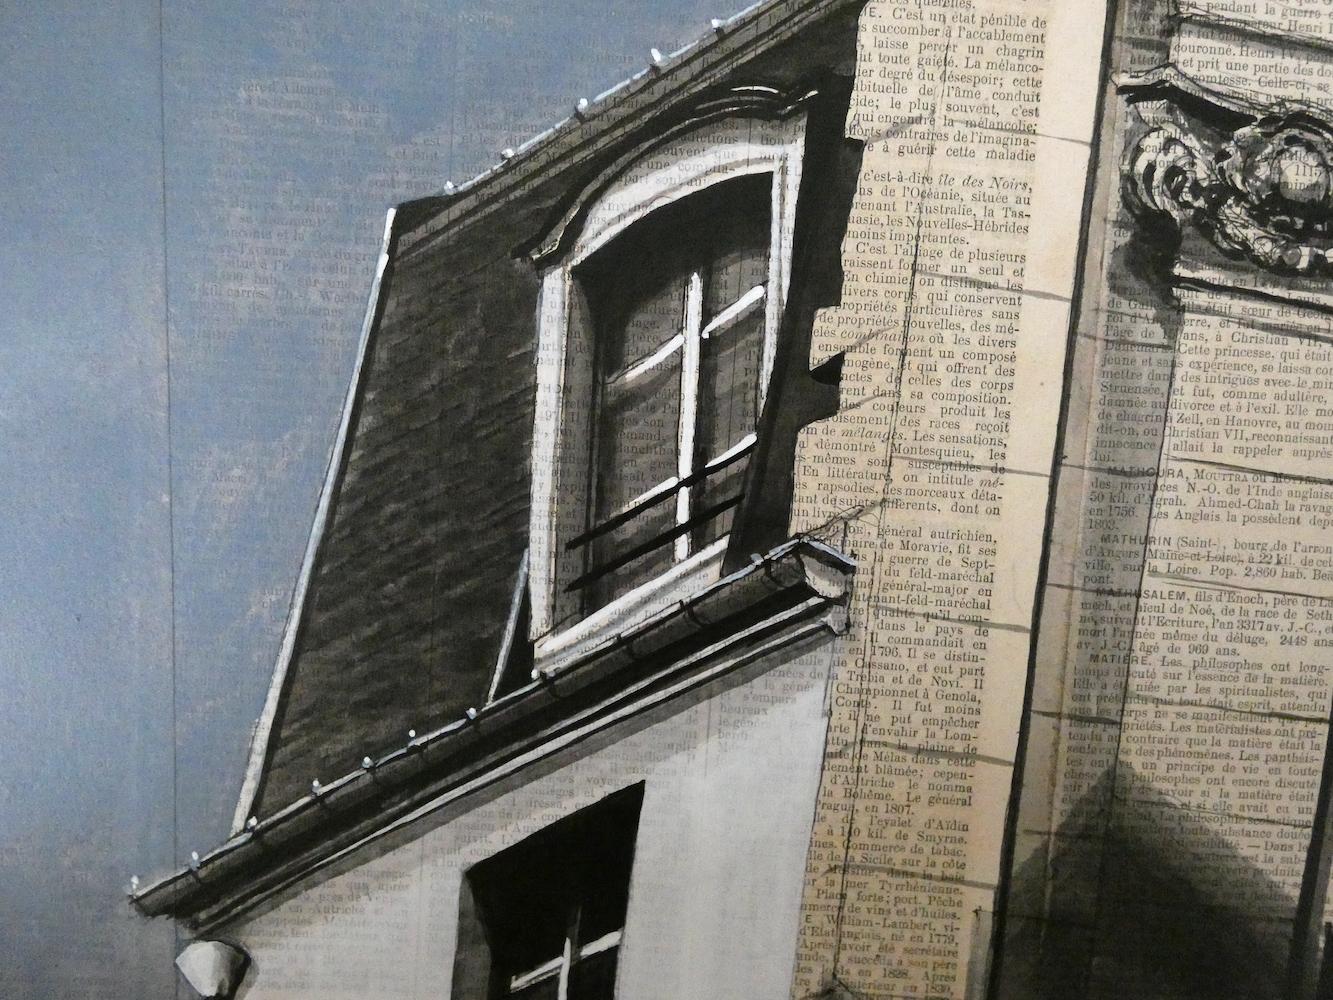 Epreuve de l'Irréel n°2/19 by Guillaume Chansarel - Urban landscape painting - Contemporary Painting by Guillaume Chansarel (Guiyome)